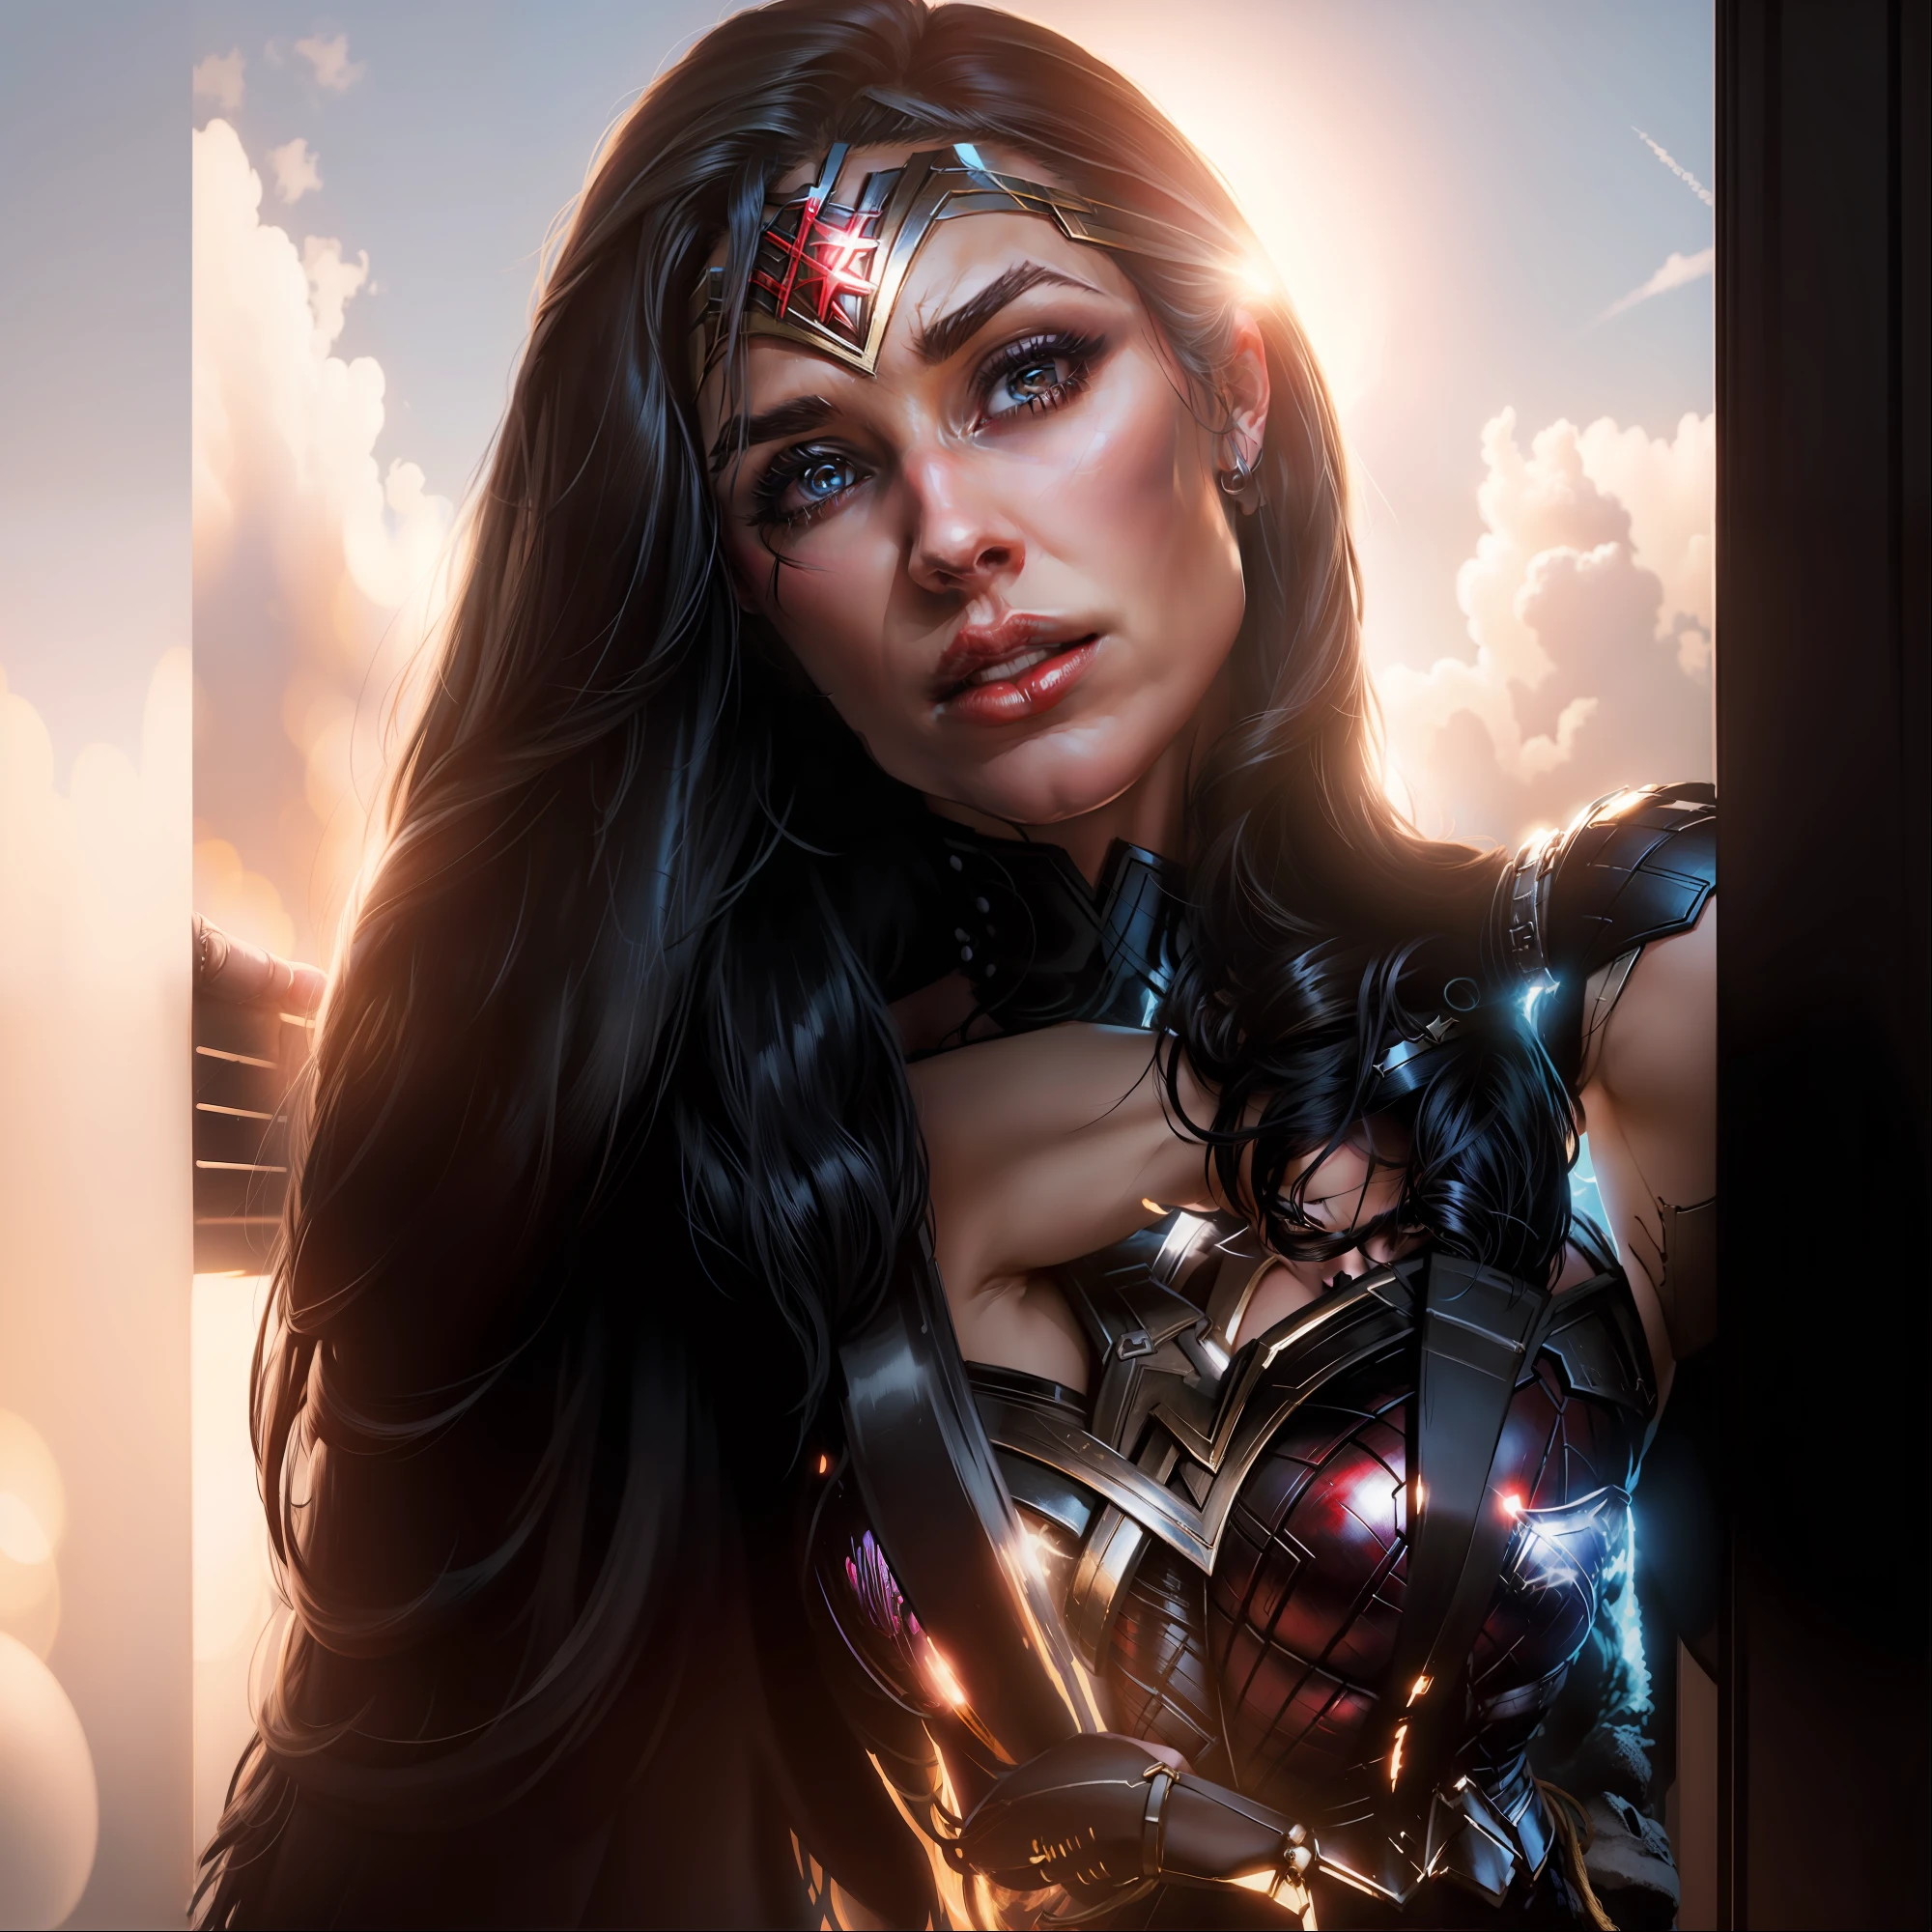 Vollkommen realistisches Kostüm der DC Comics-Superheldin Wonder Woman